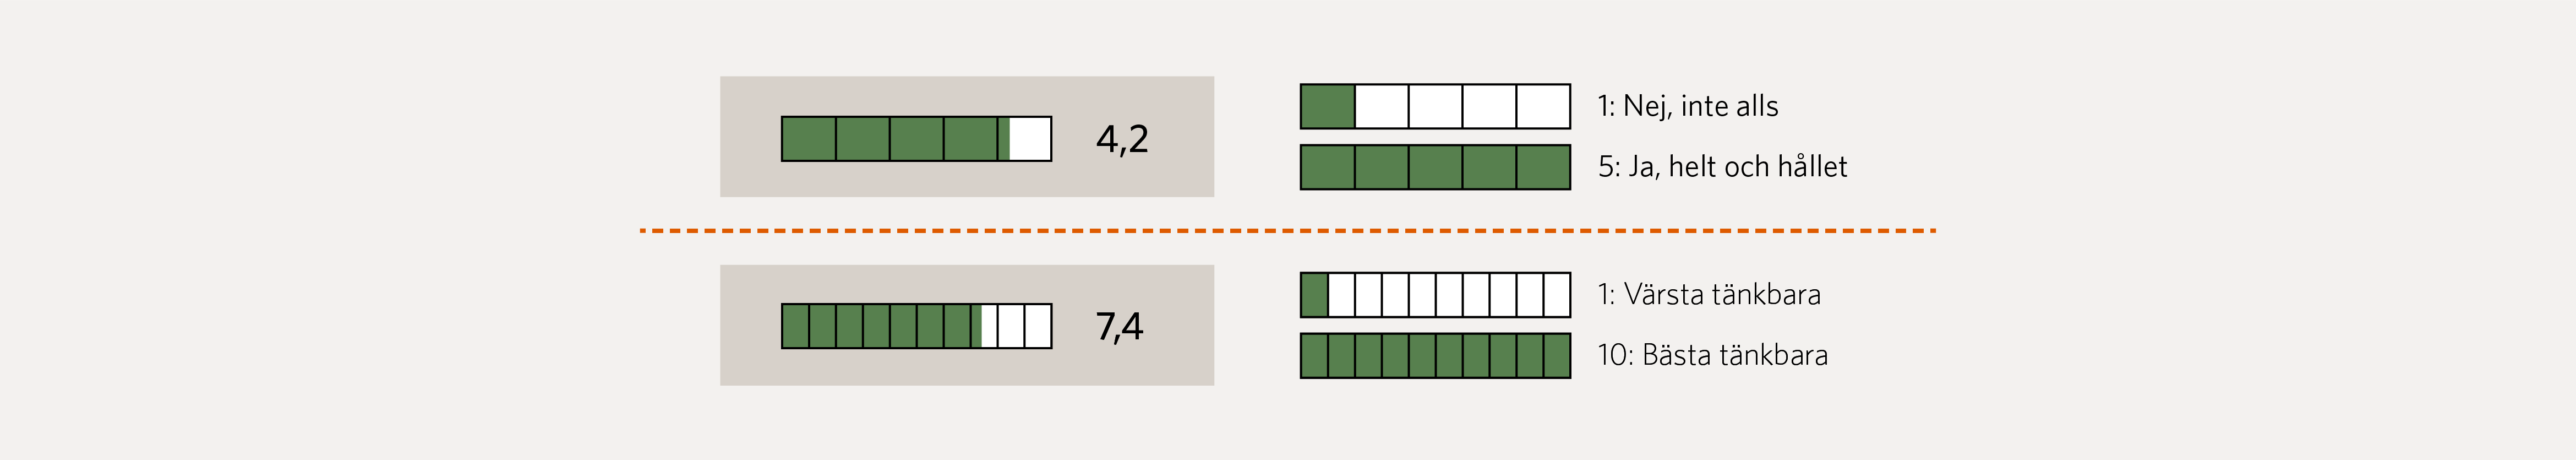 Figur 4. Figuren visar två olika typer av skattningsfrågor: en med svarsalternativ 1 till 5 och en med svarsalternativ 1 till 10. Höga nummer indikerar positiva omdömen, låga nummer indikerar svaga omdömen. Genomsnittligt resultat redovisas löpande i rapportens figurer.